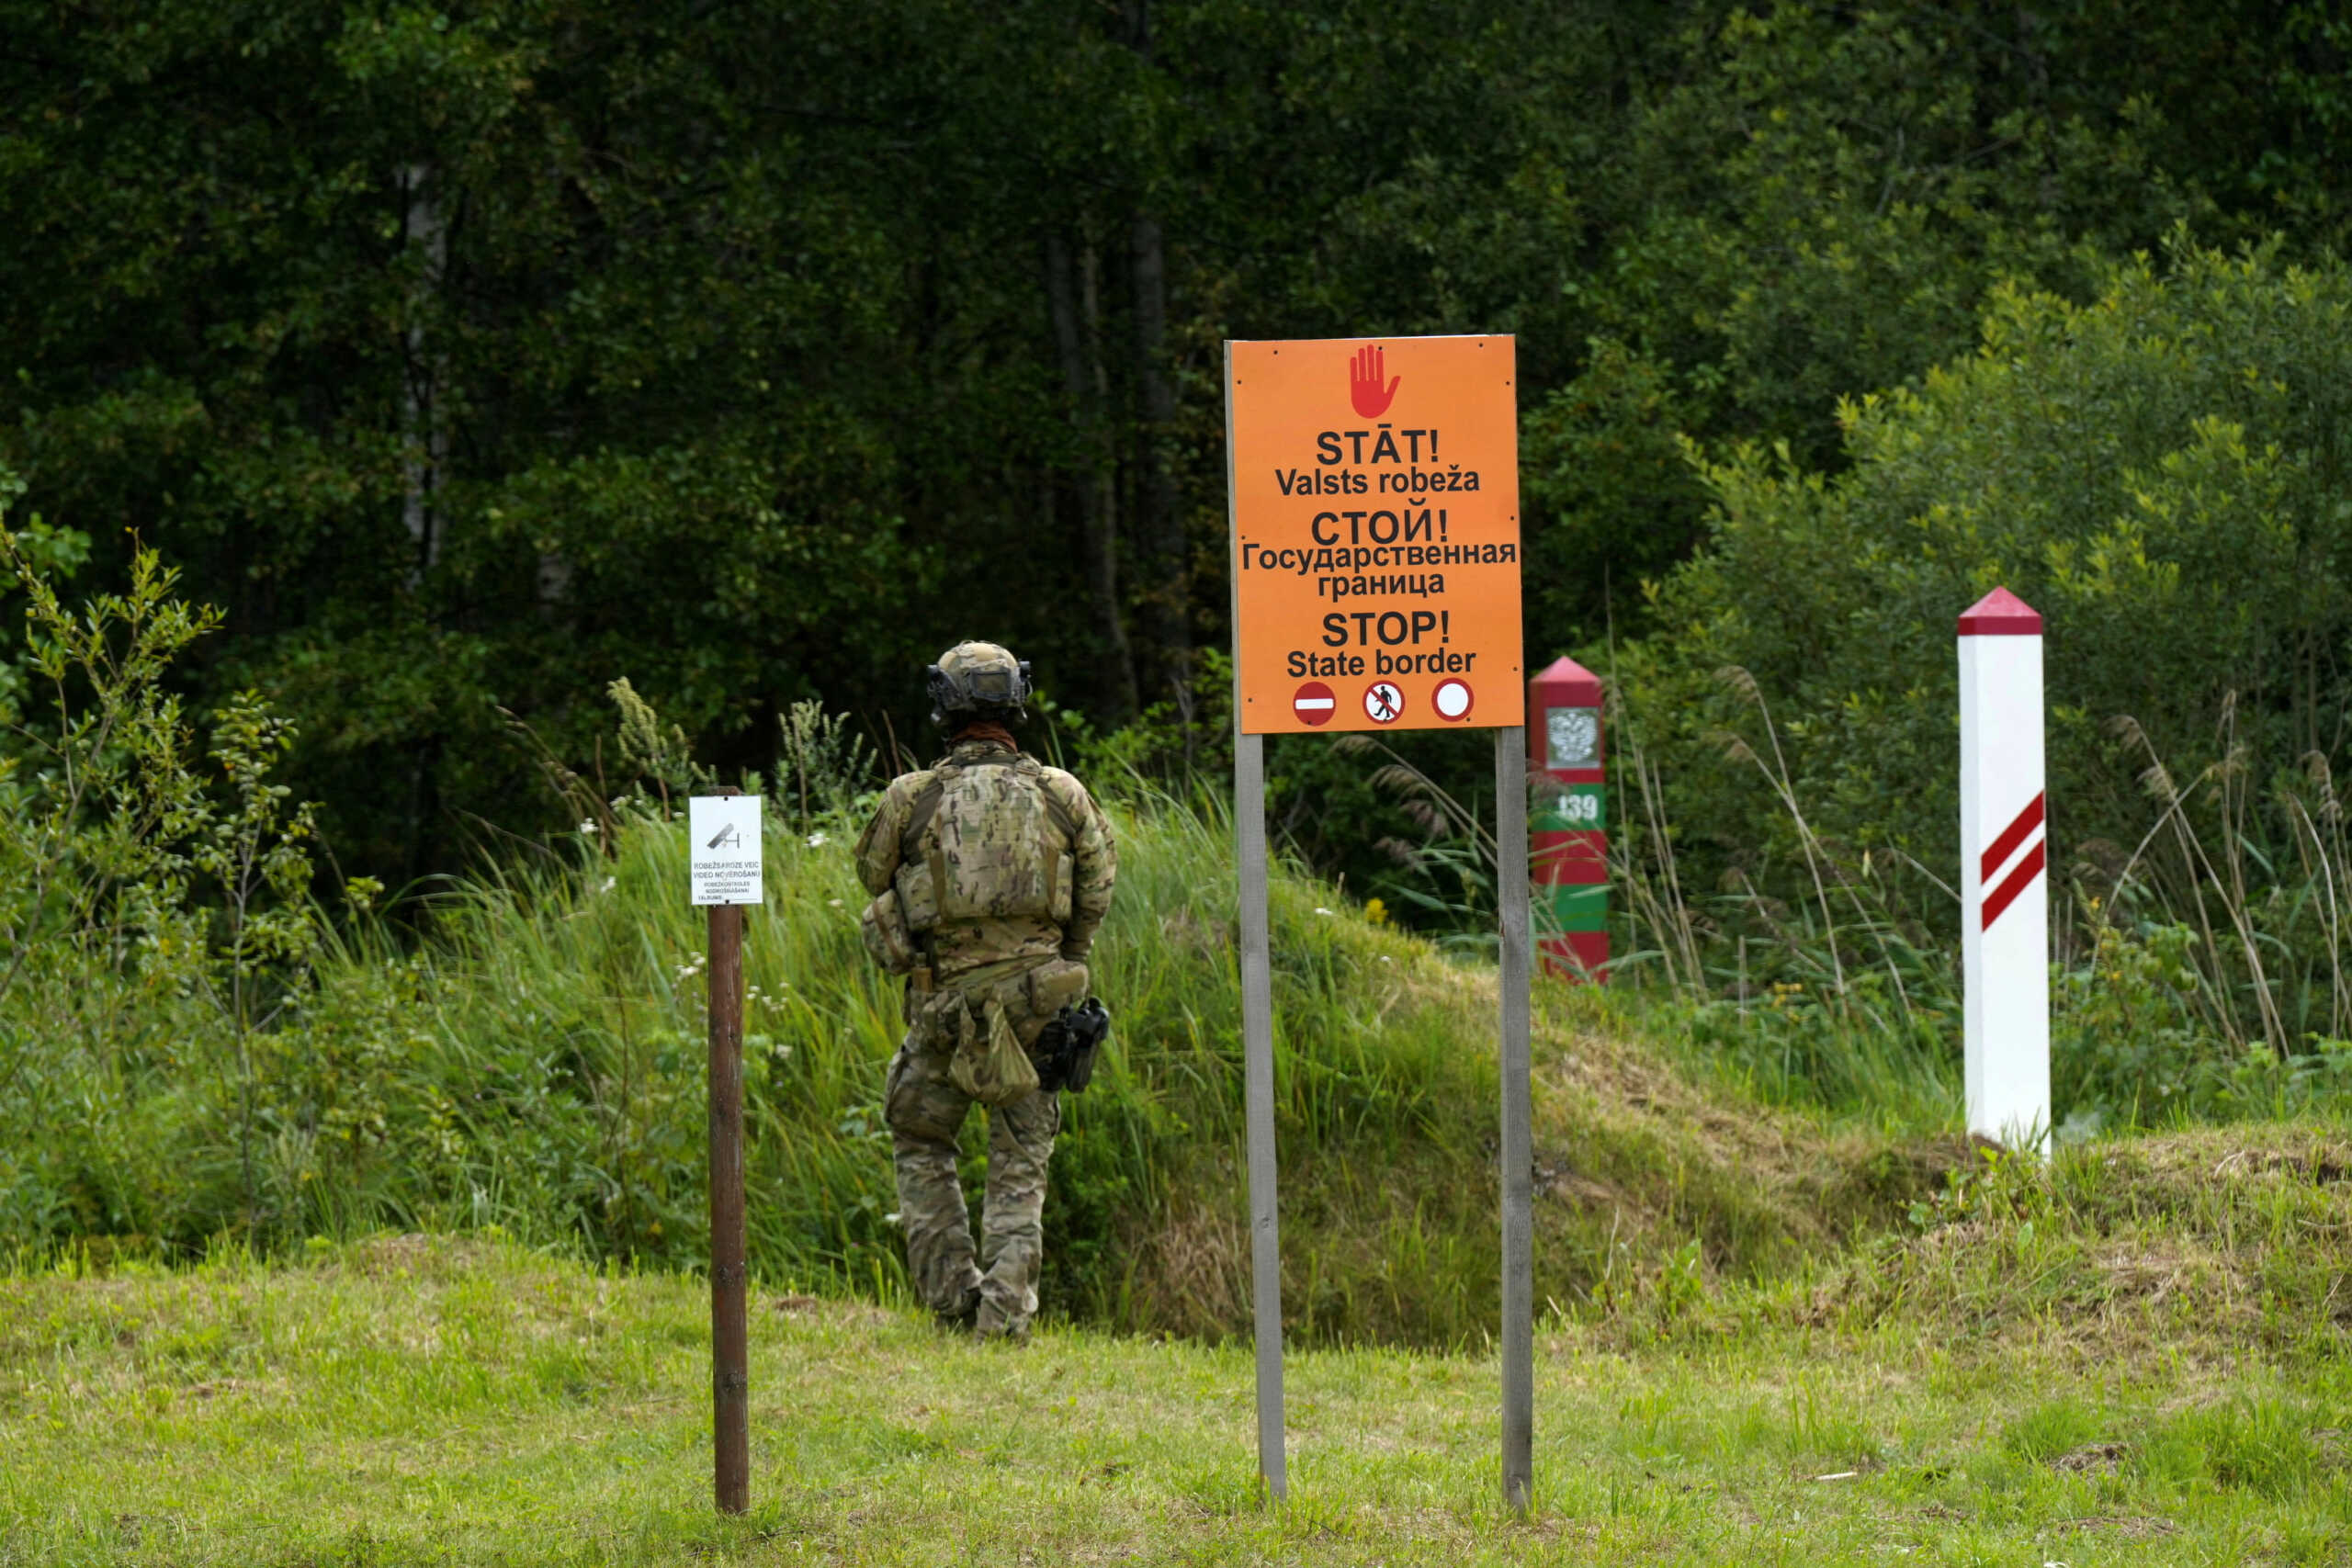 Η Λετονία έκλεισε δυο συνοριακούς σταθμούς με τη Ρωσία